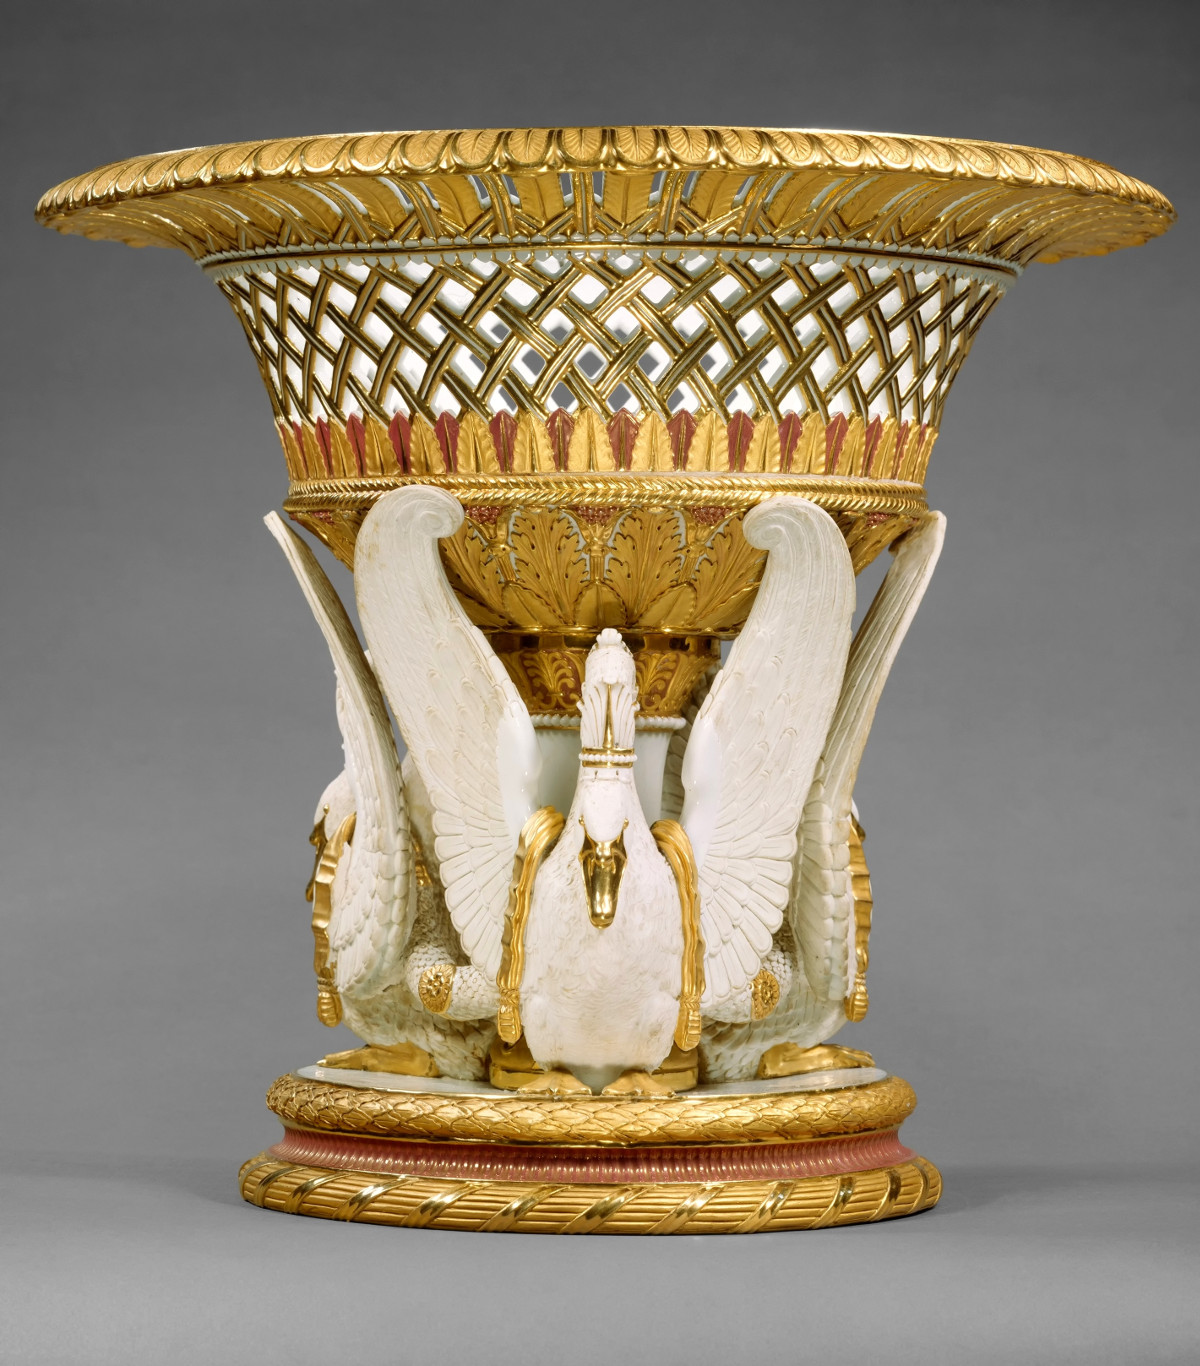 1823 Fruit or flower basket. Hard-paste porcelain. metmuseum